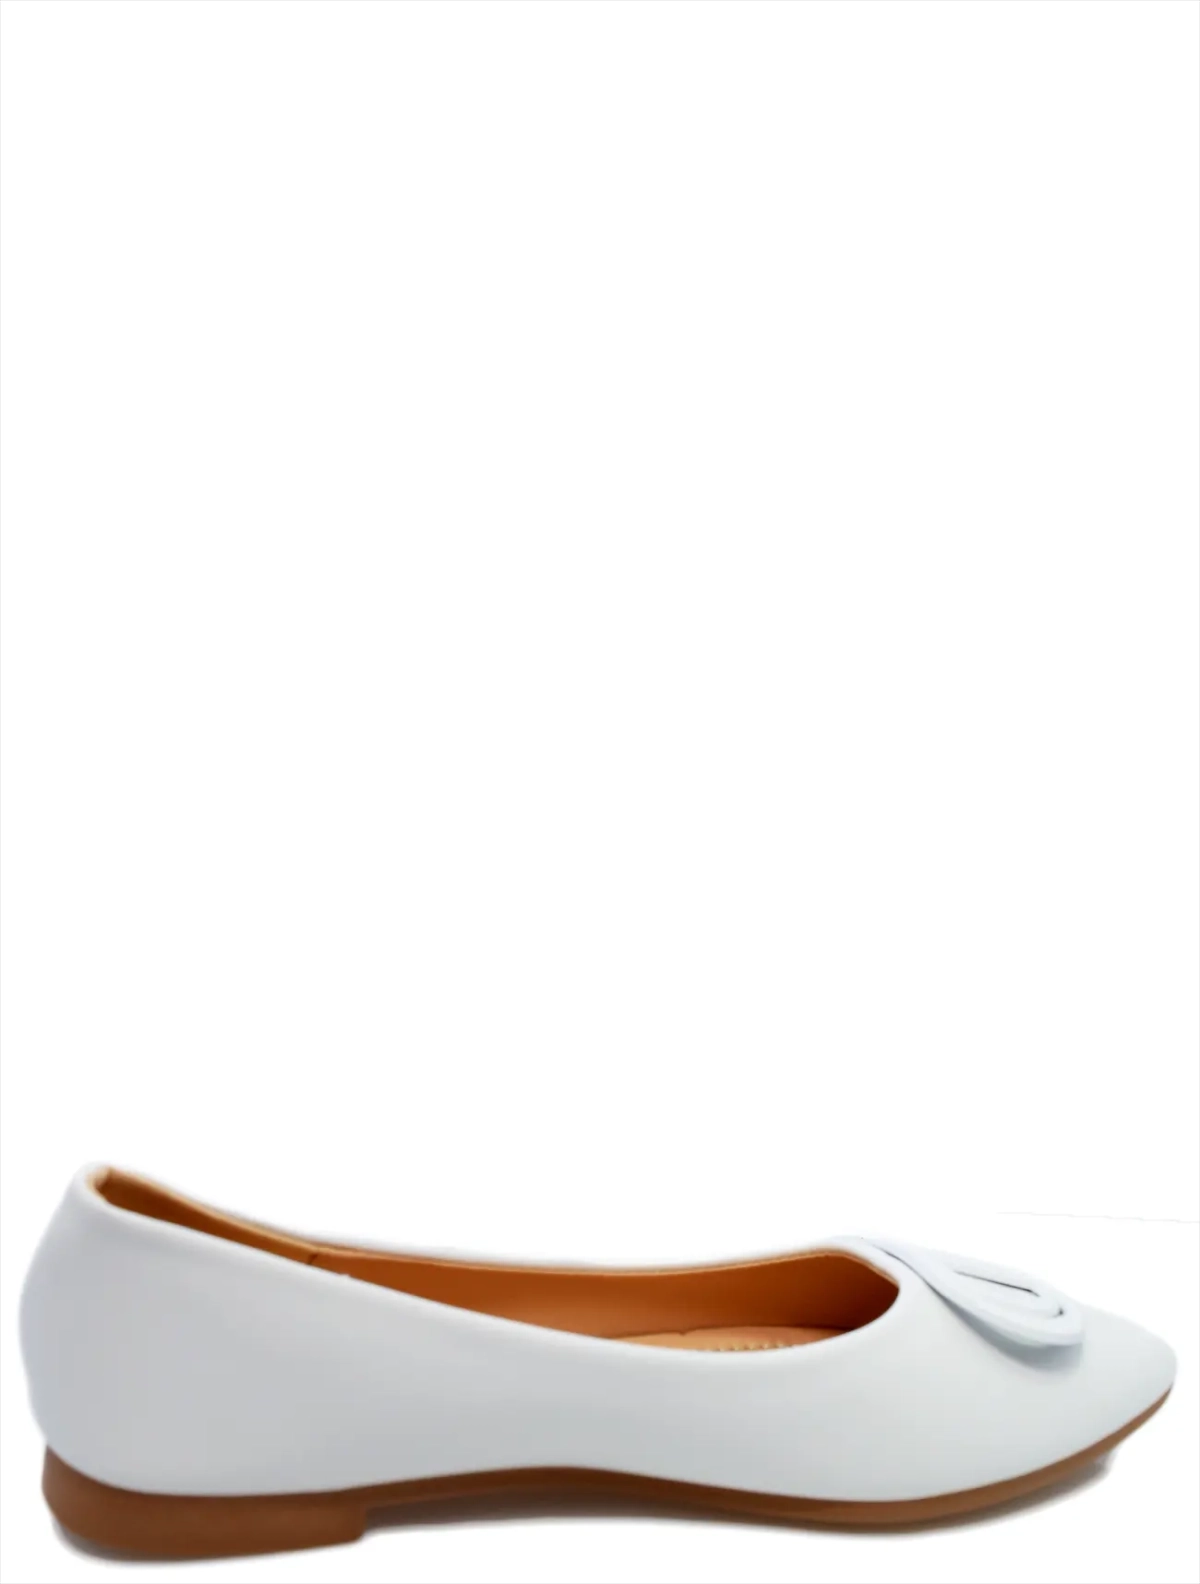 Aimosi 6029-21 женские туфли